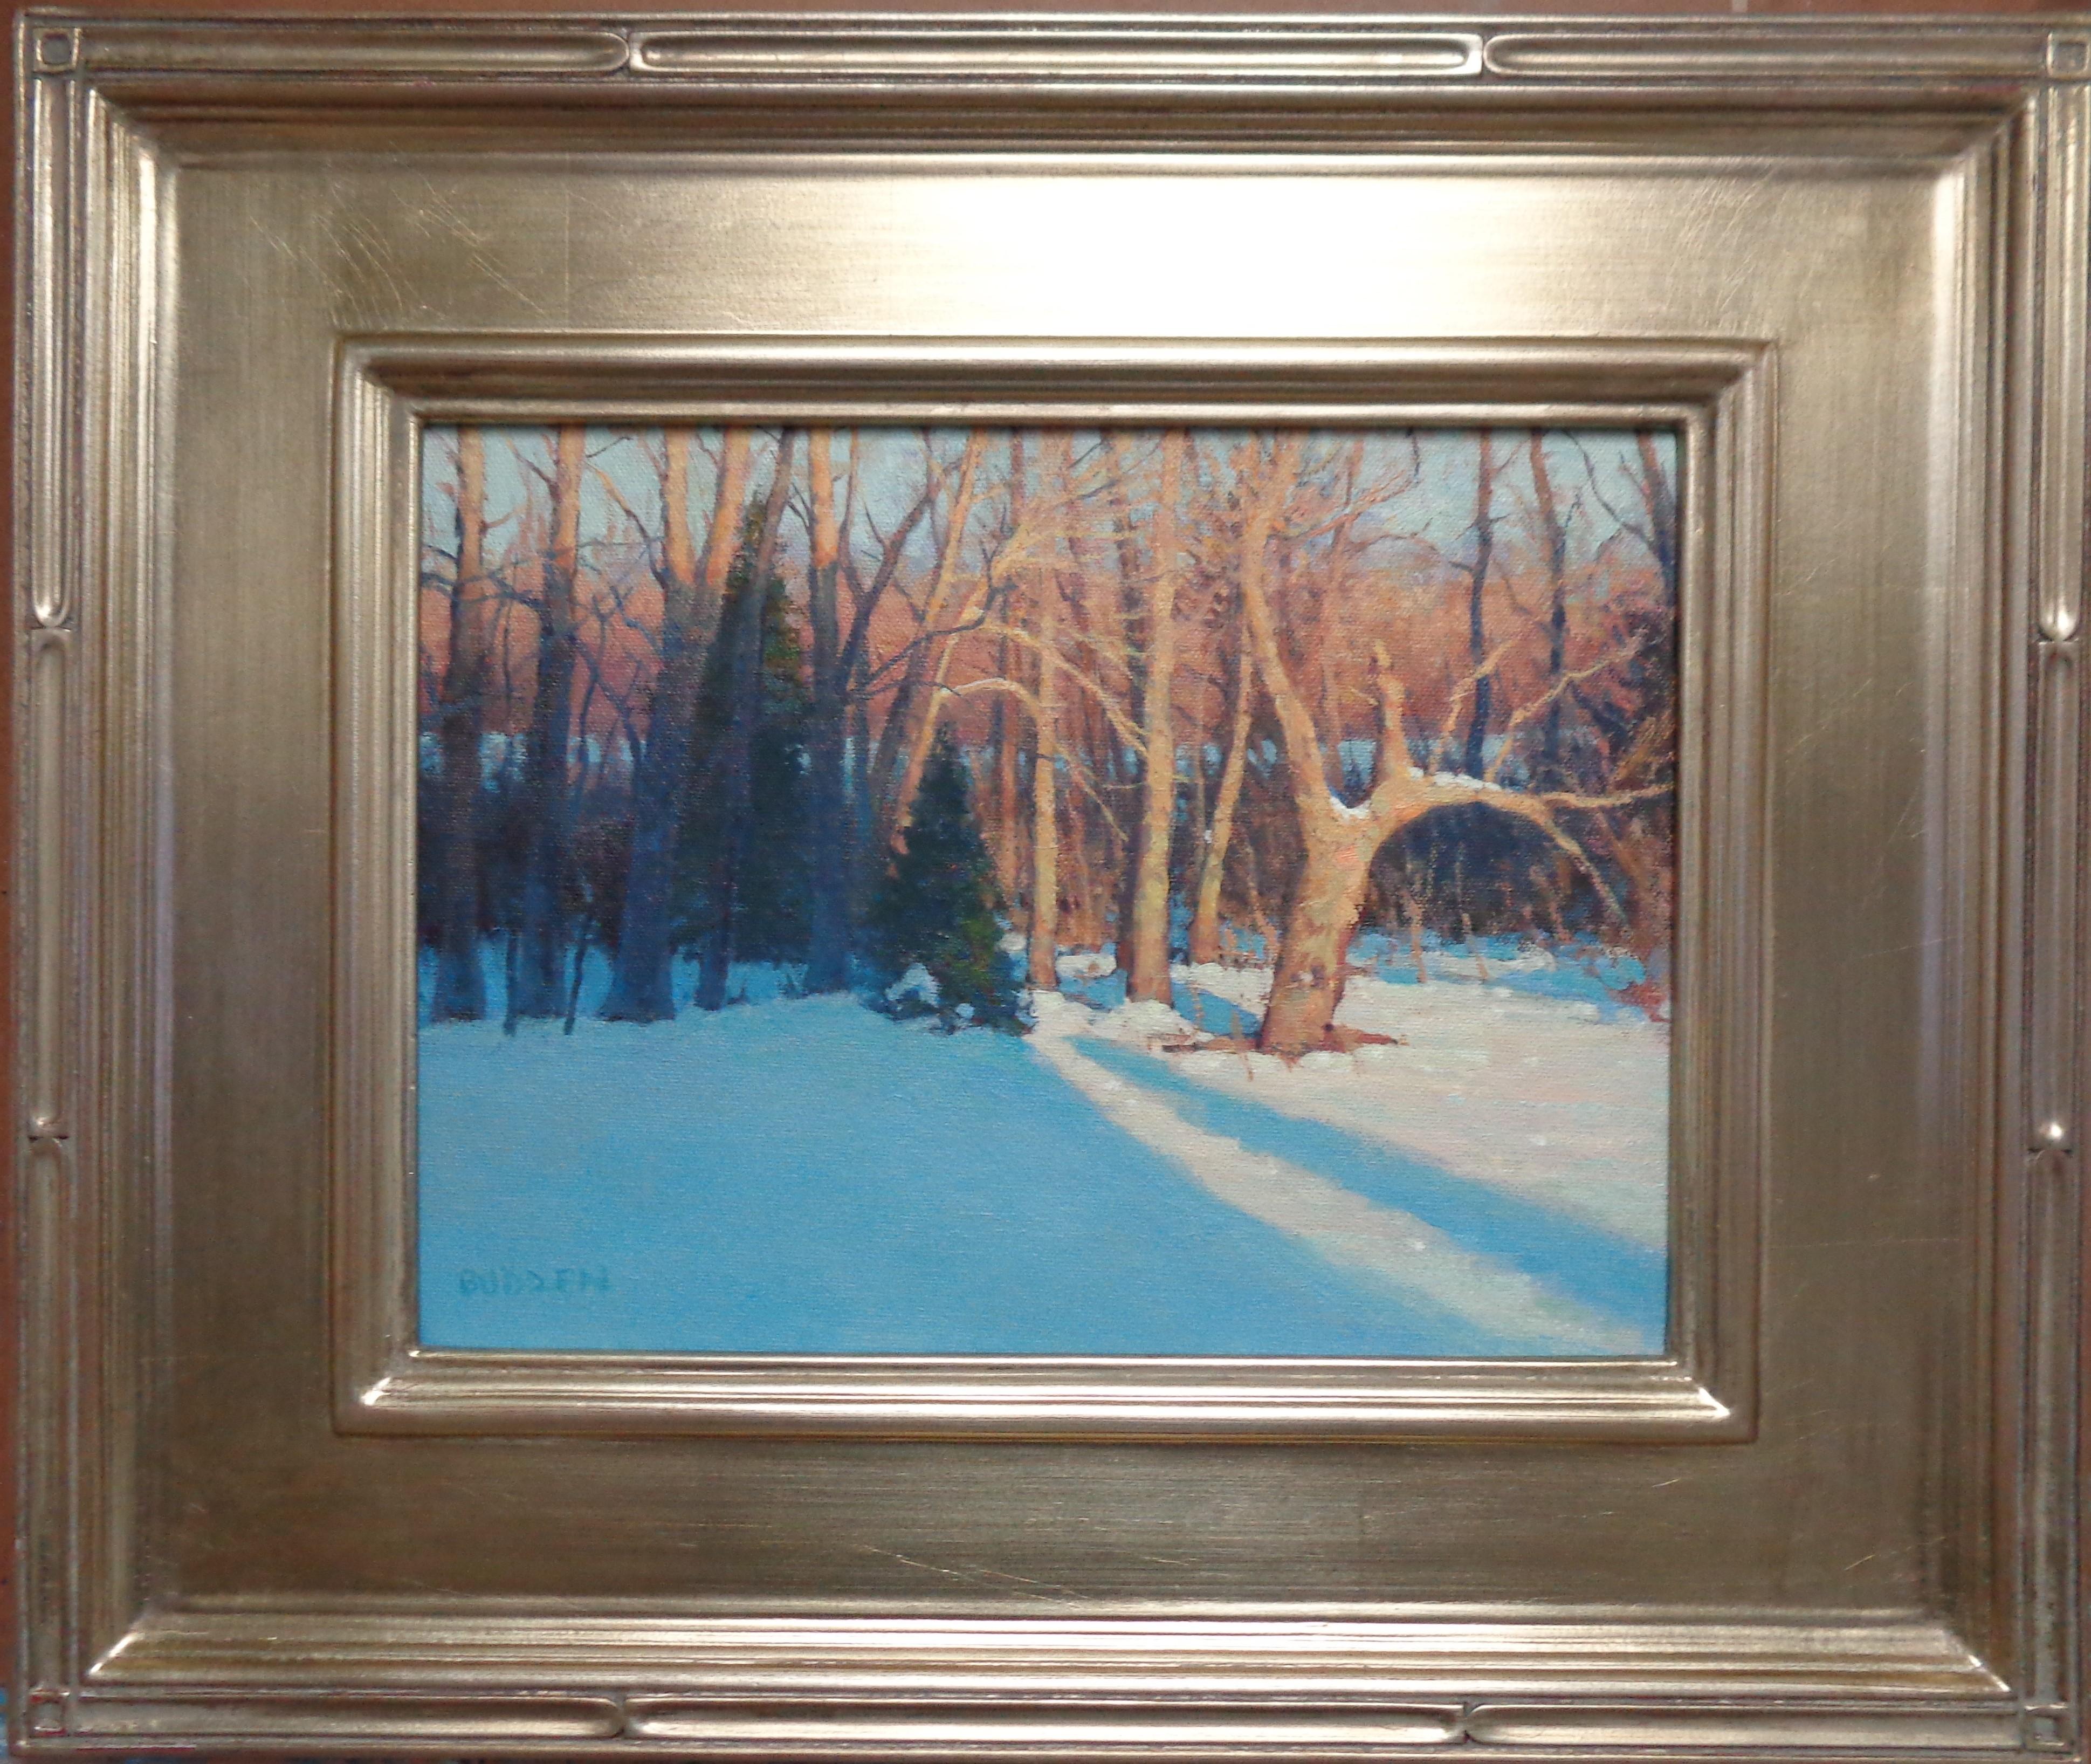 Sonnenlicht & Schatten Winterbäume
Öl/Leinwand 
9 x 12 Bild

ERKLÄRUNG DES VERKÄUFERS
Ich bin seit den frühen 80er Jahren als Künstler und Händler im Kunstgeschäft tätig. Seit nunmehr fast 40 Jahren. Ich konzentriere mich hauptsächlich auf meine